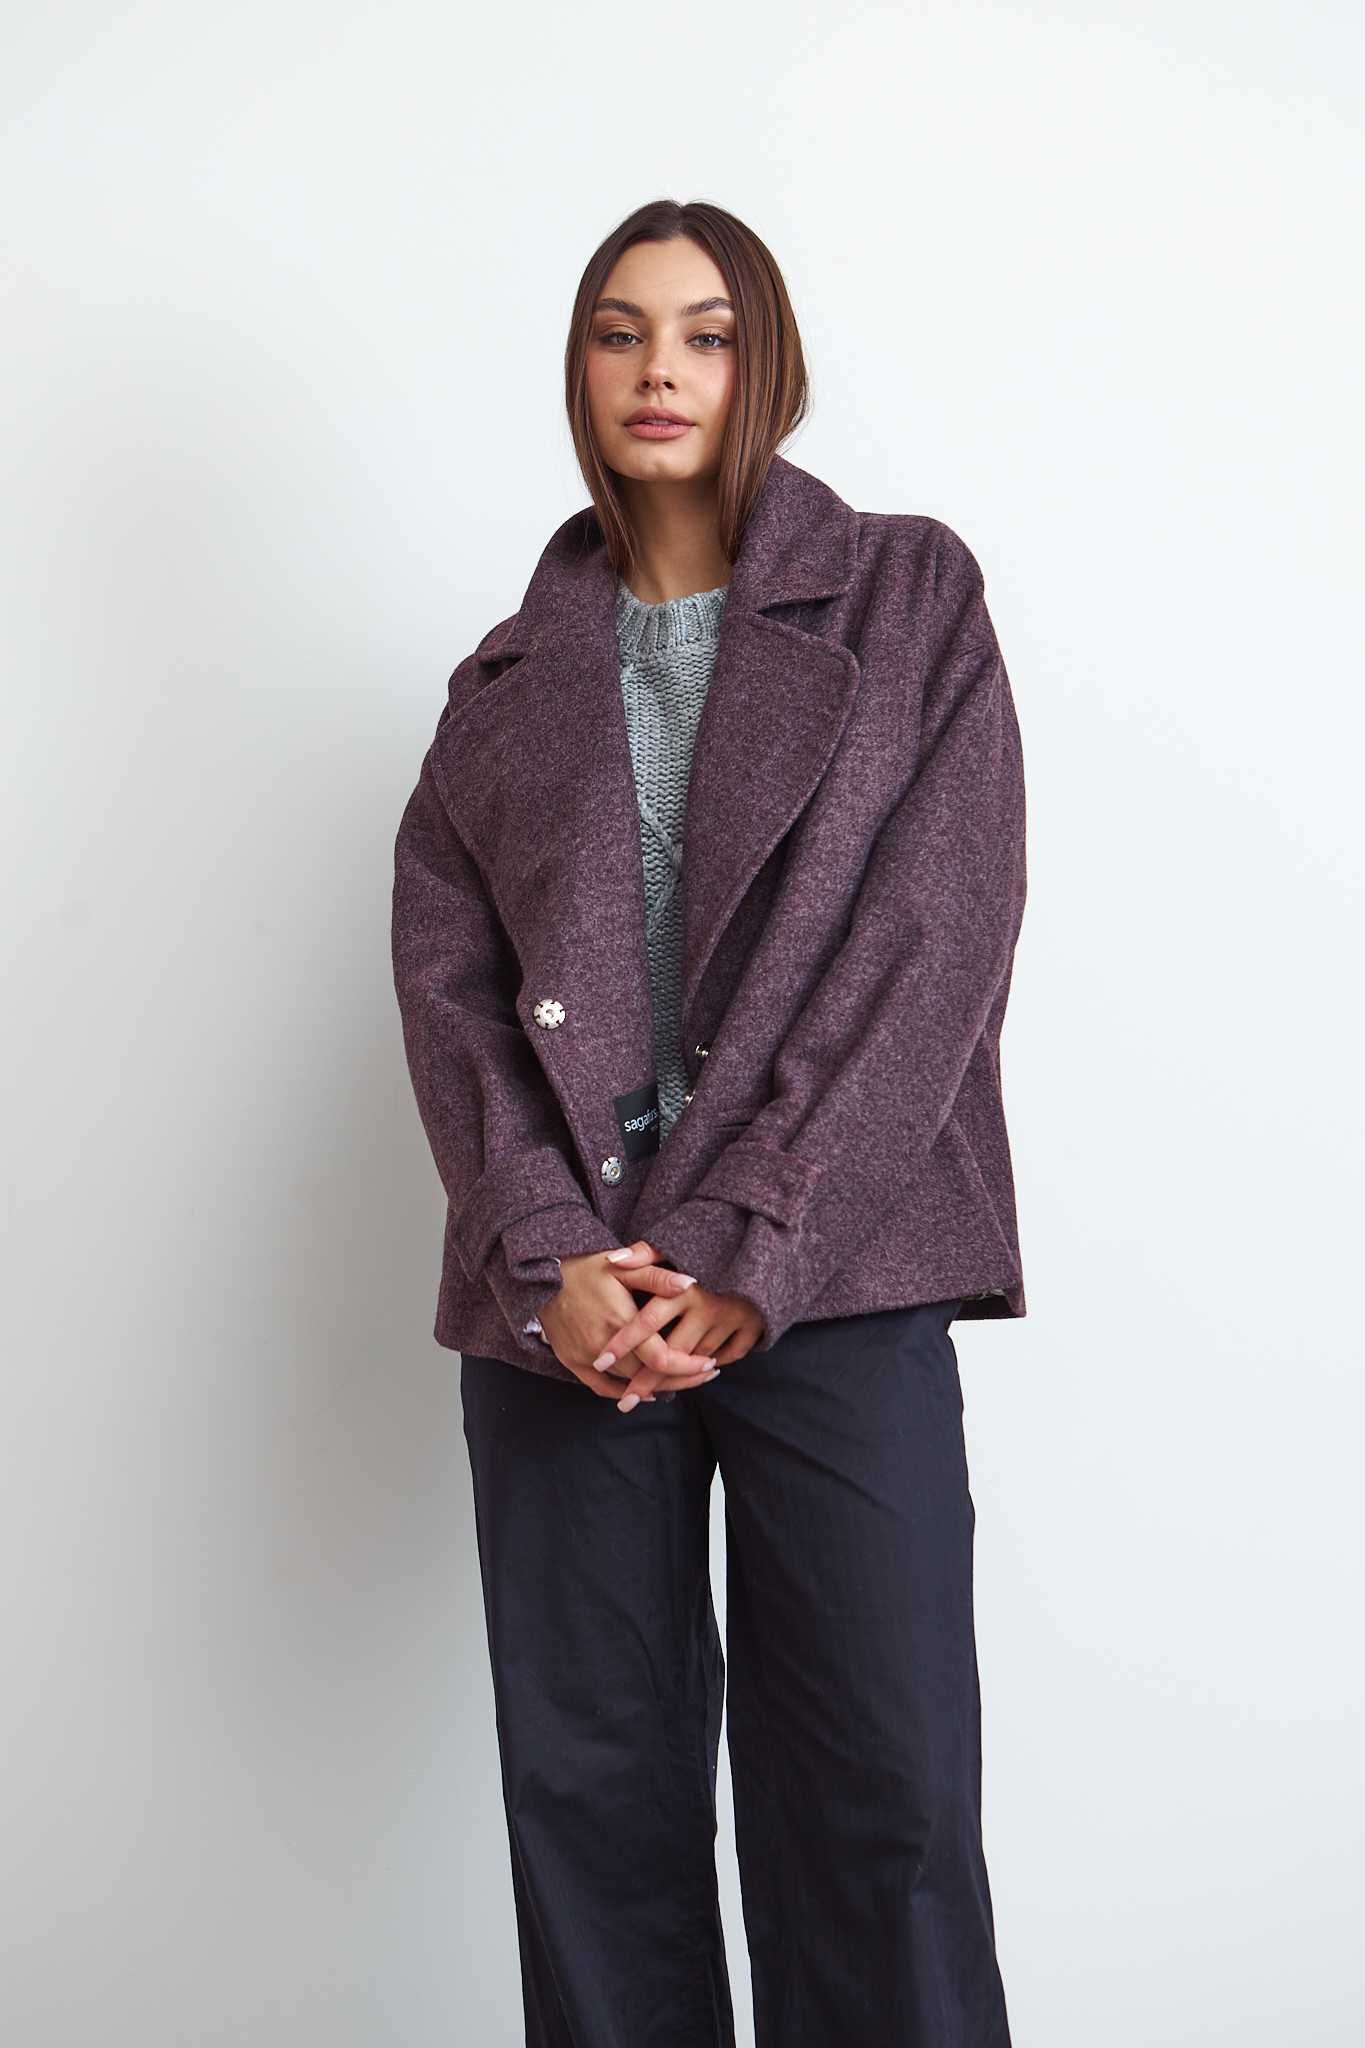 Стильное пальто Италия шерсть кашемир  новая коллекция Шикарный цвет